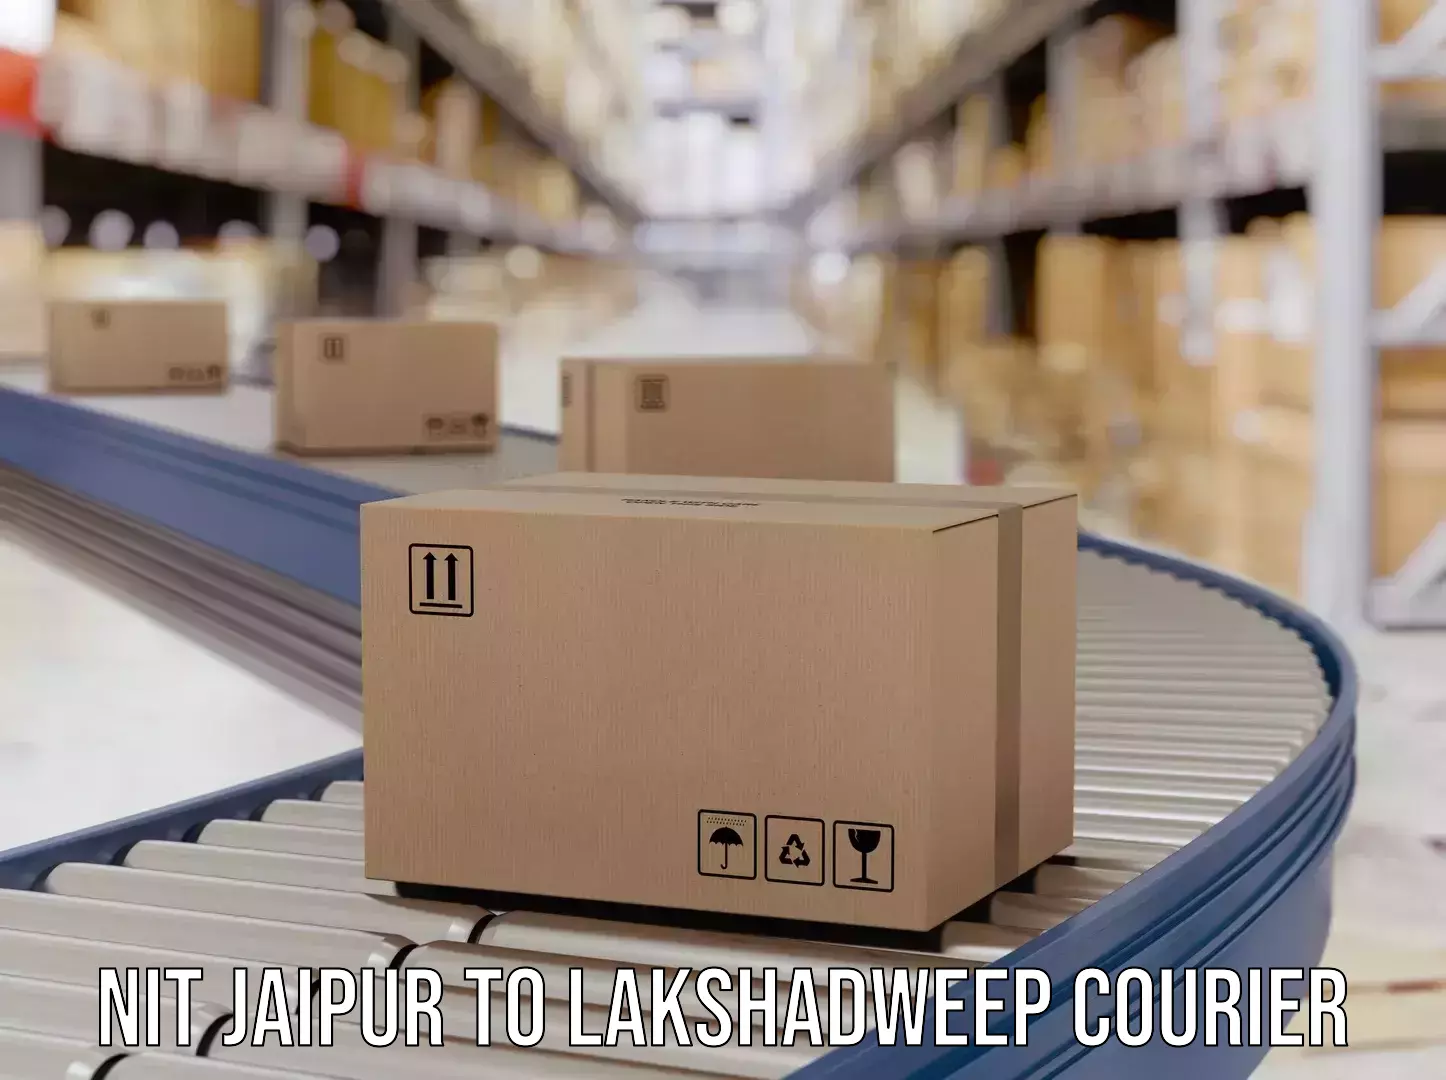 High-priority parcel service NIT Jaipur to Lakshadweep